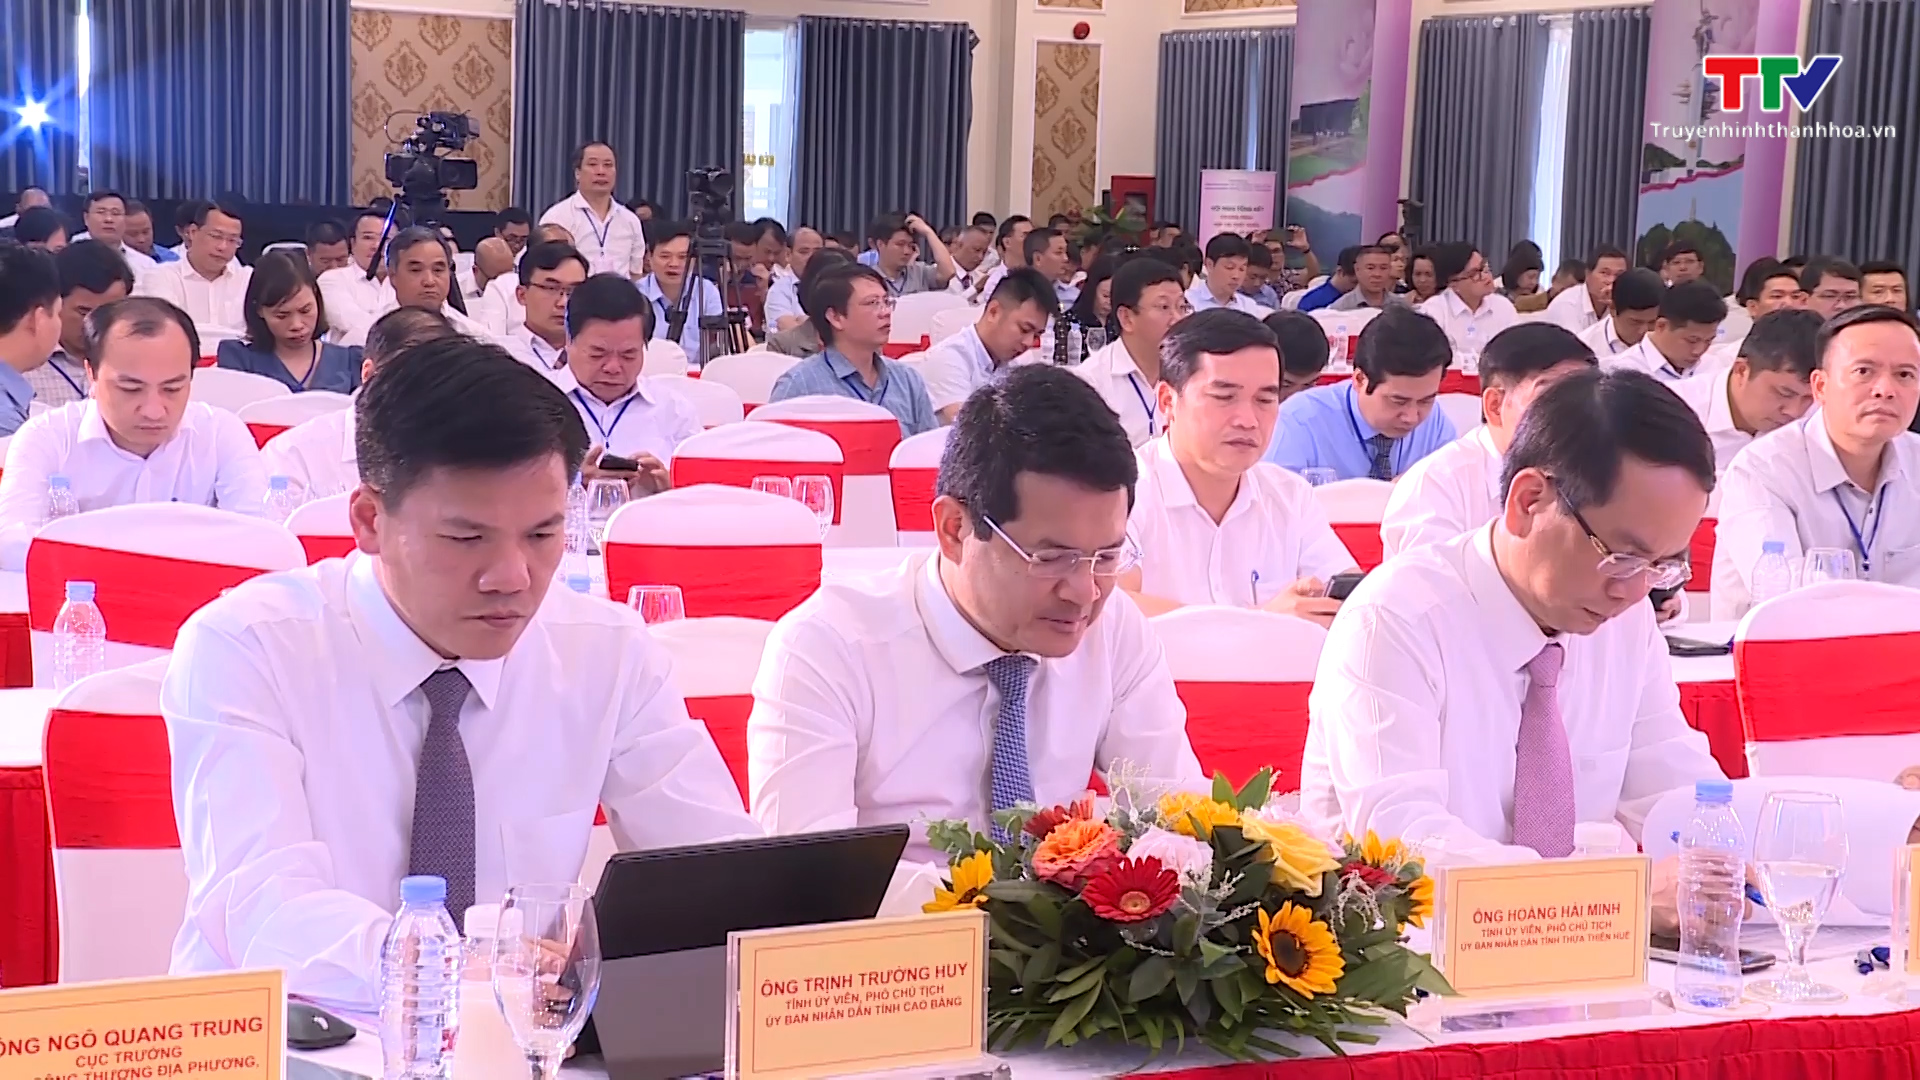 Tổng kết chương trình hợp tác phát triển kinh tế - xã hội giữa thành phố Hồ Chí Minh với các địa phương phía Bắc và Bắc Trung Bộ - Ảnh 4.